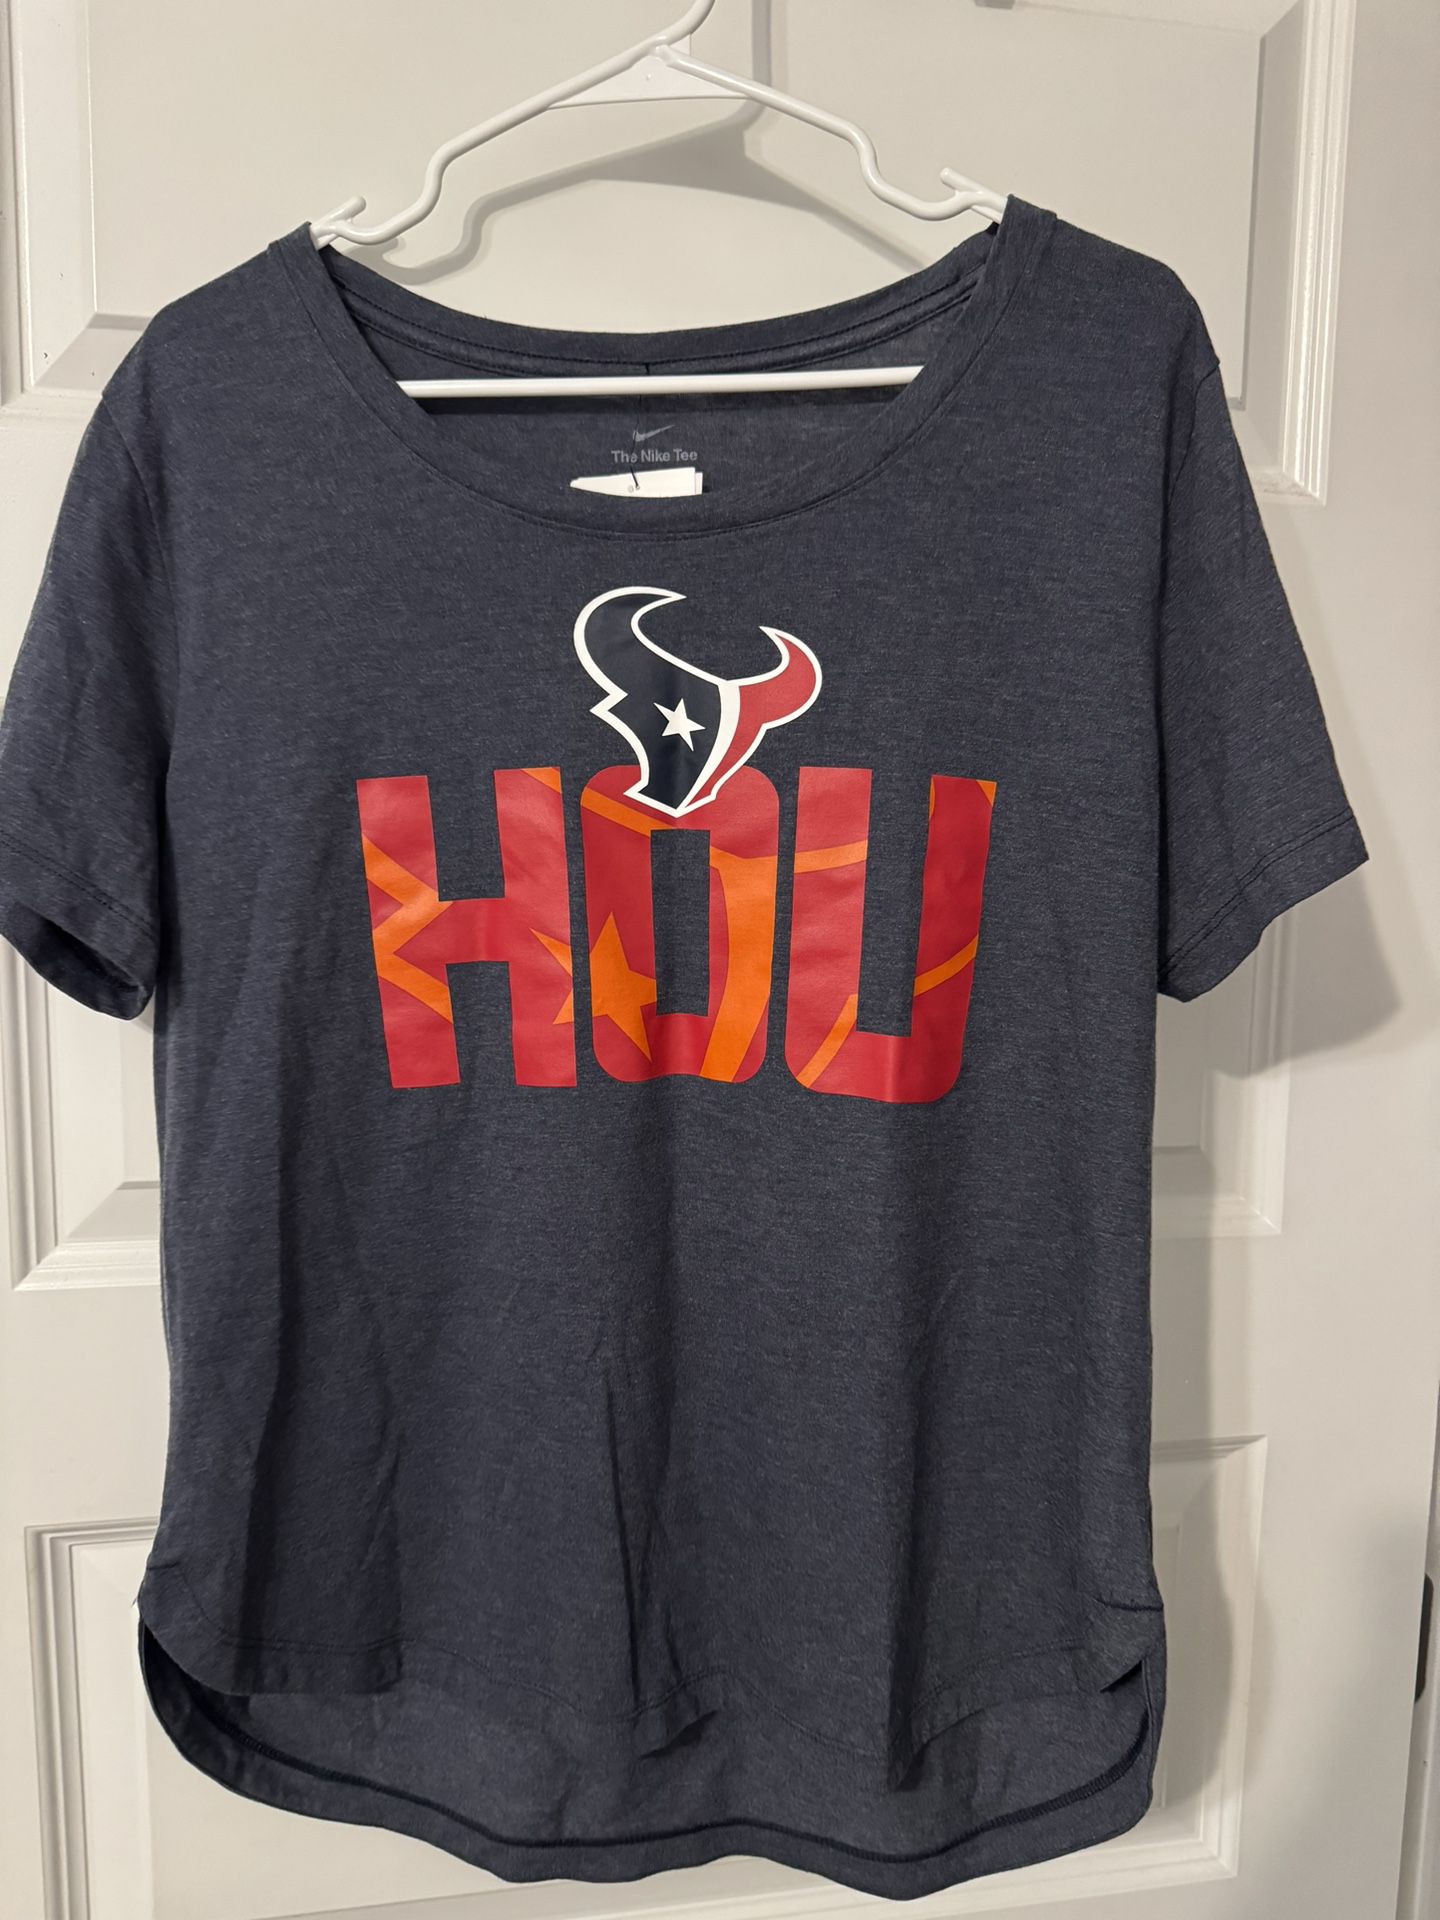 Texans Shirt Women’s